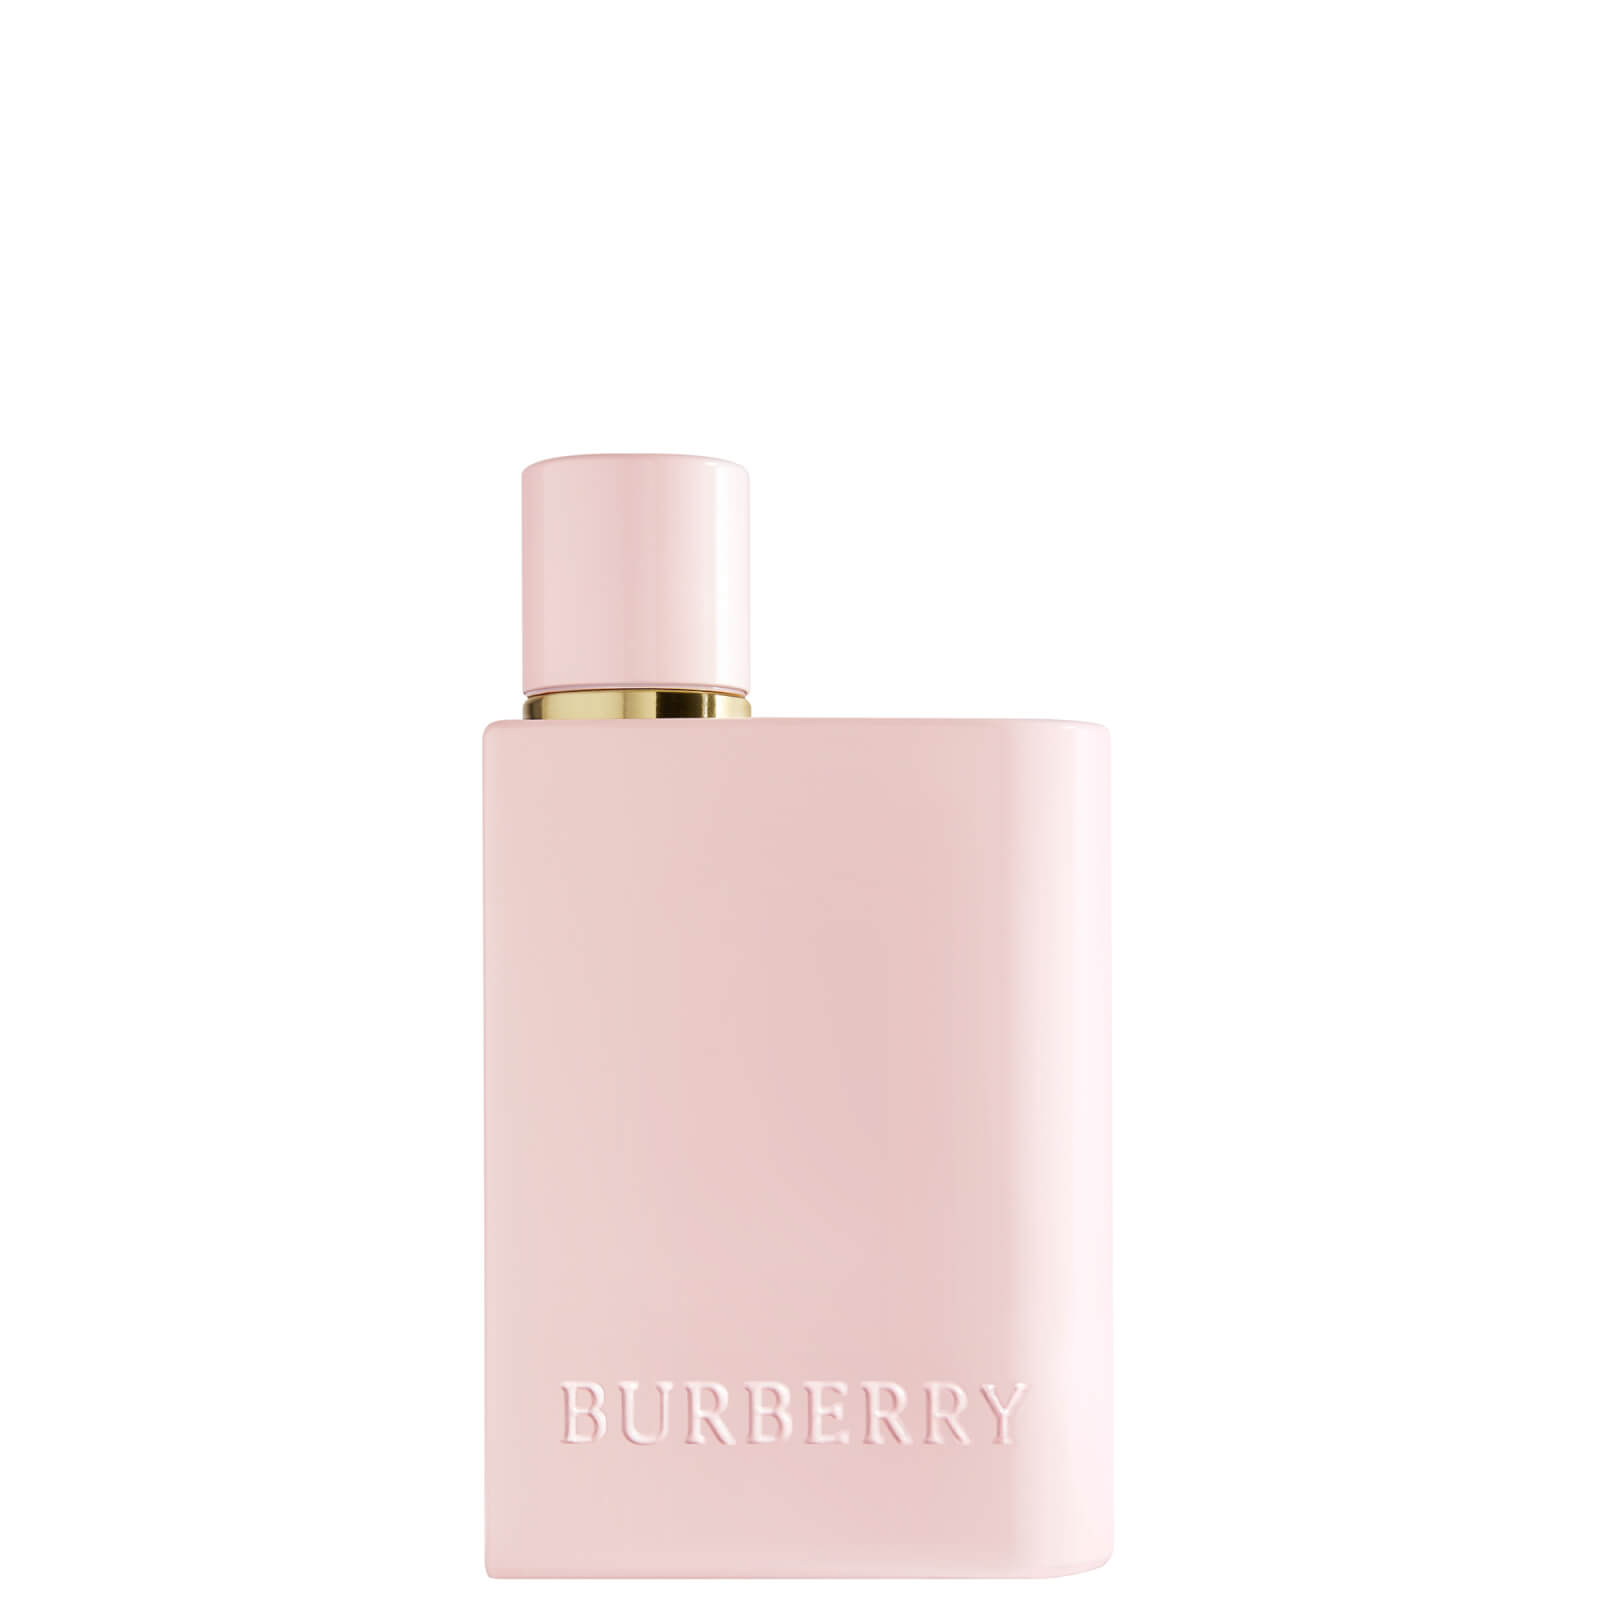 Image of Burberry Her Elixir de Parfum for Women 50ml